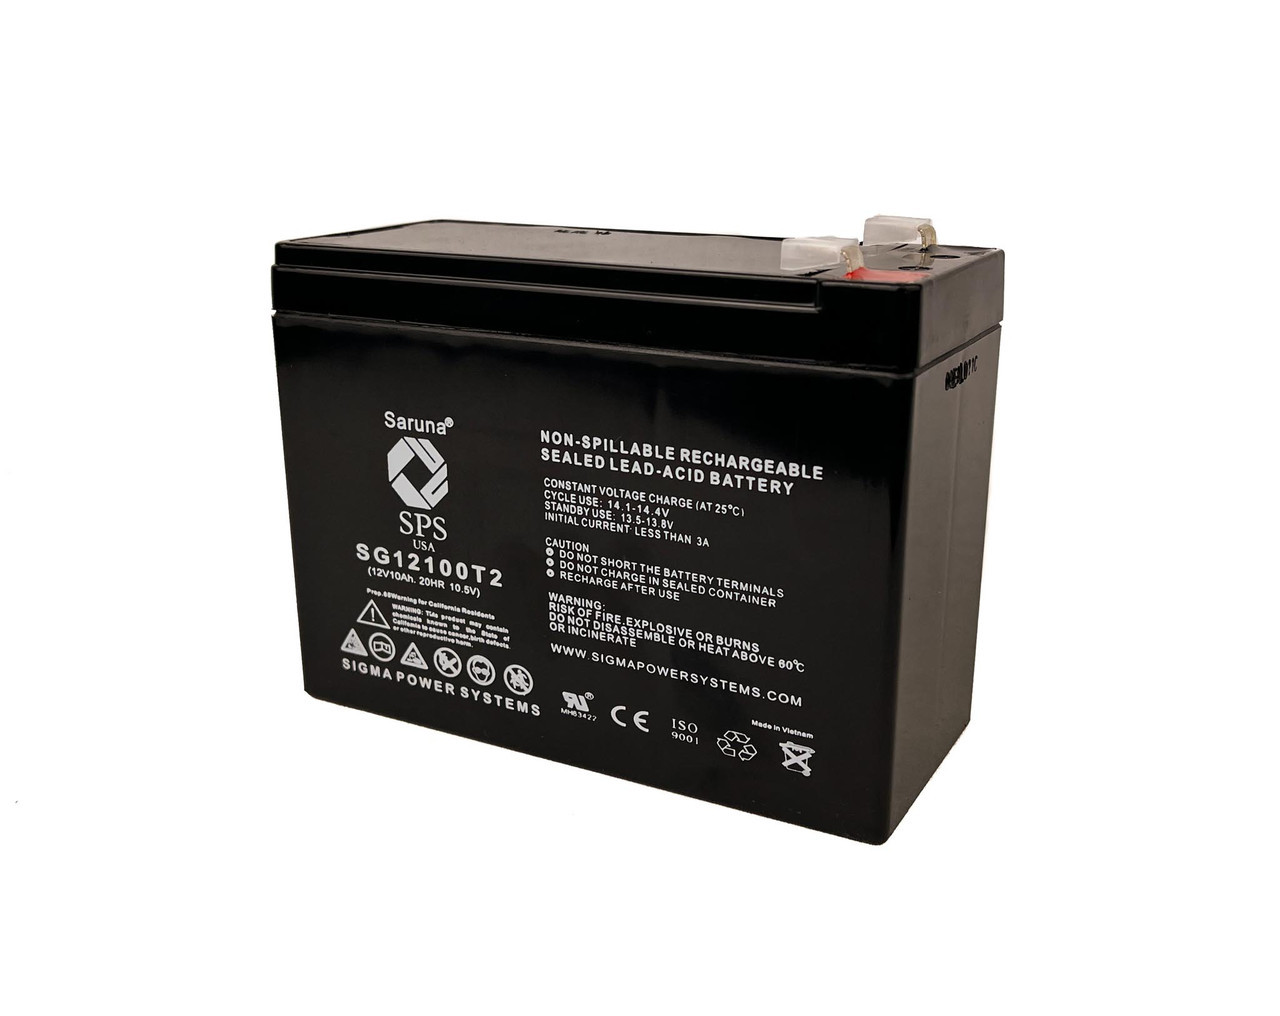 Raion Power 12V 10Ah Non-Spillable Replacement Rechargebale Battery for Diamec DM12-10